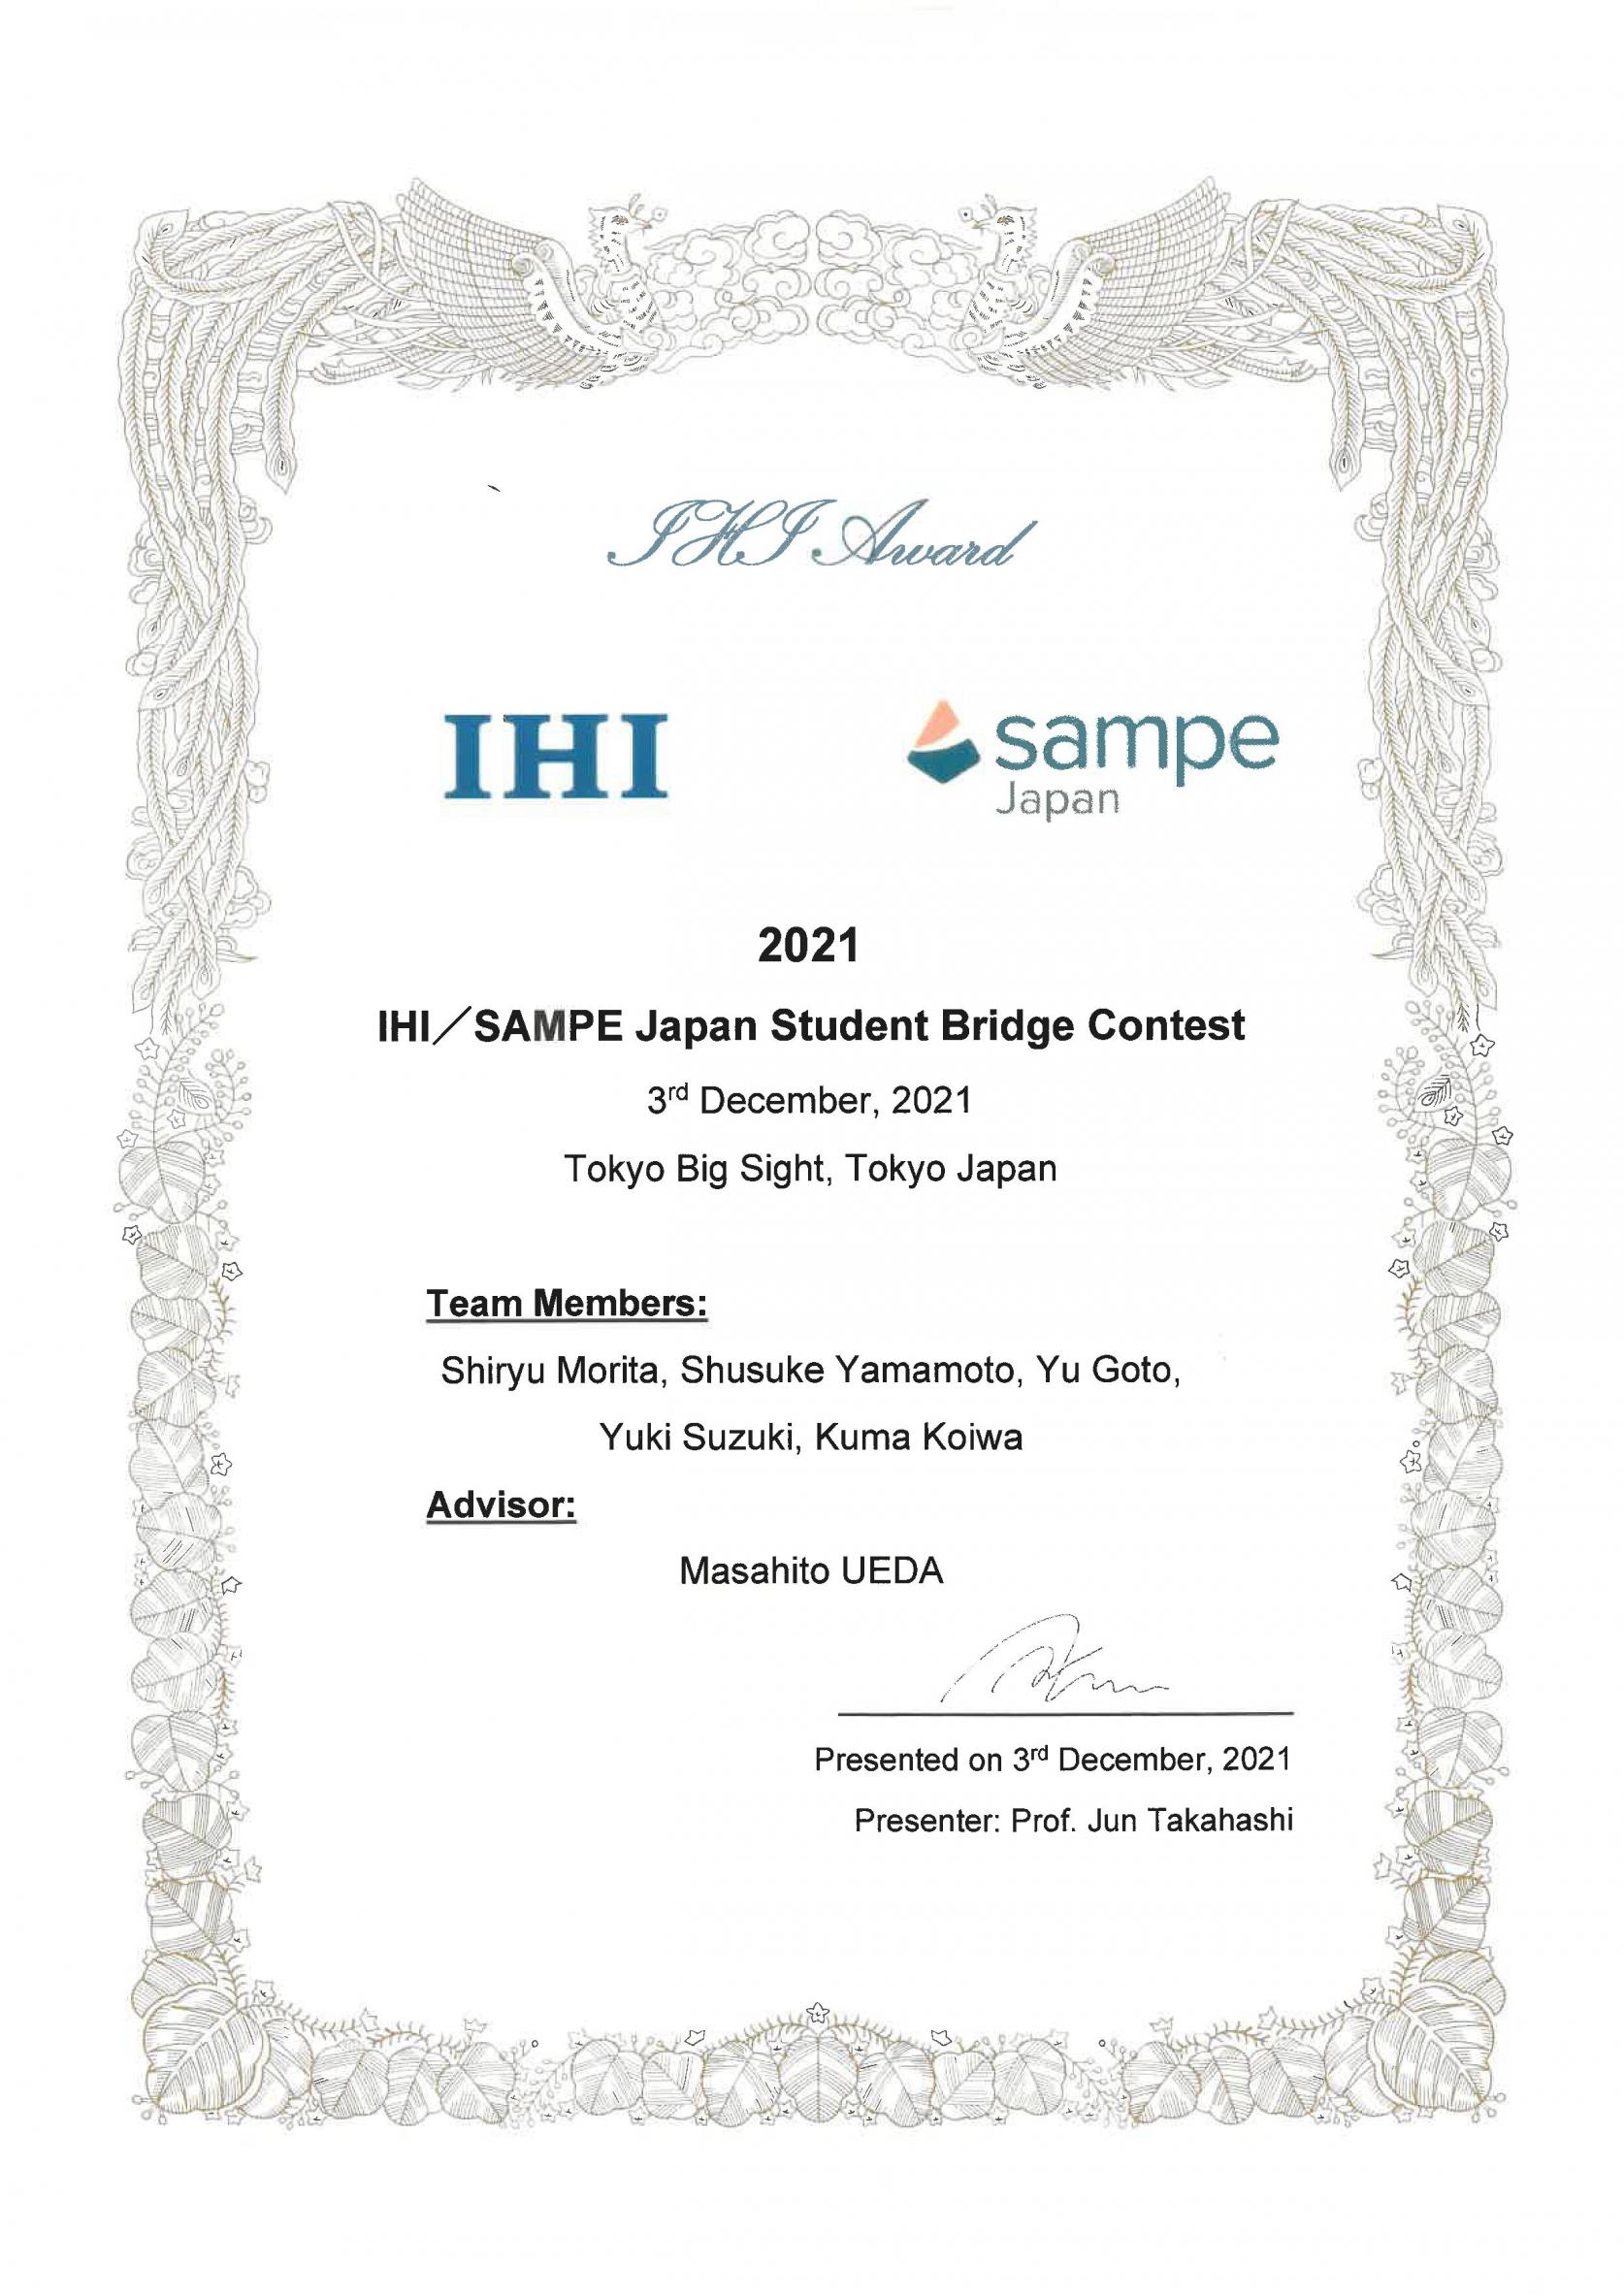 機械工学専攻の学生チームがIHI/SAMPE JAPAN Student Bridge ContestにおいてIHI賞を受賞しました。